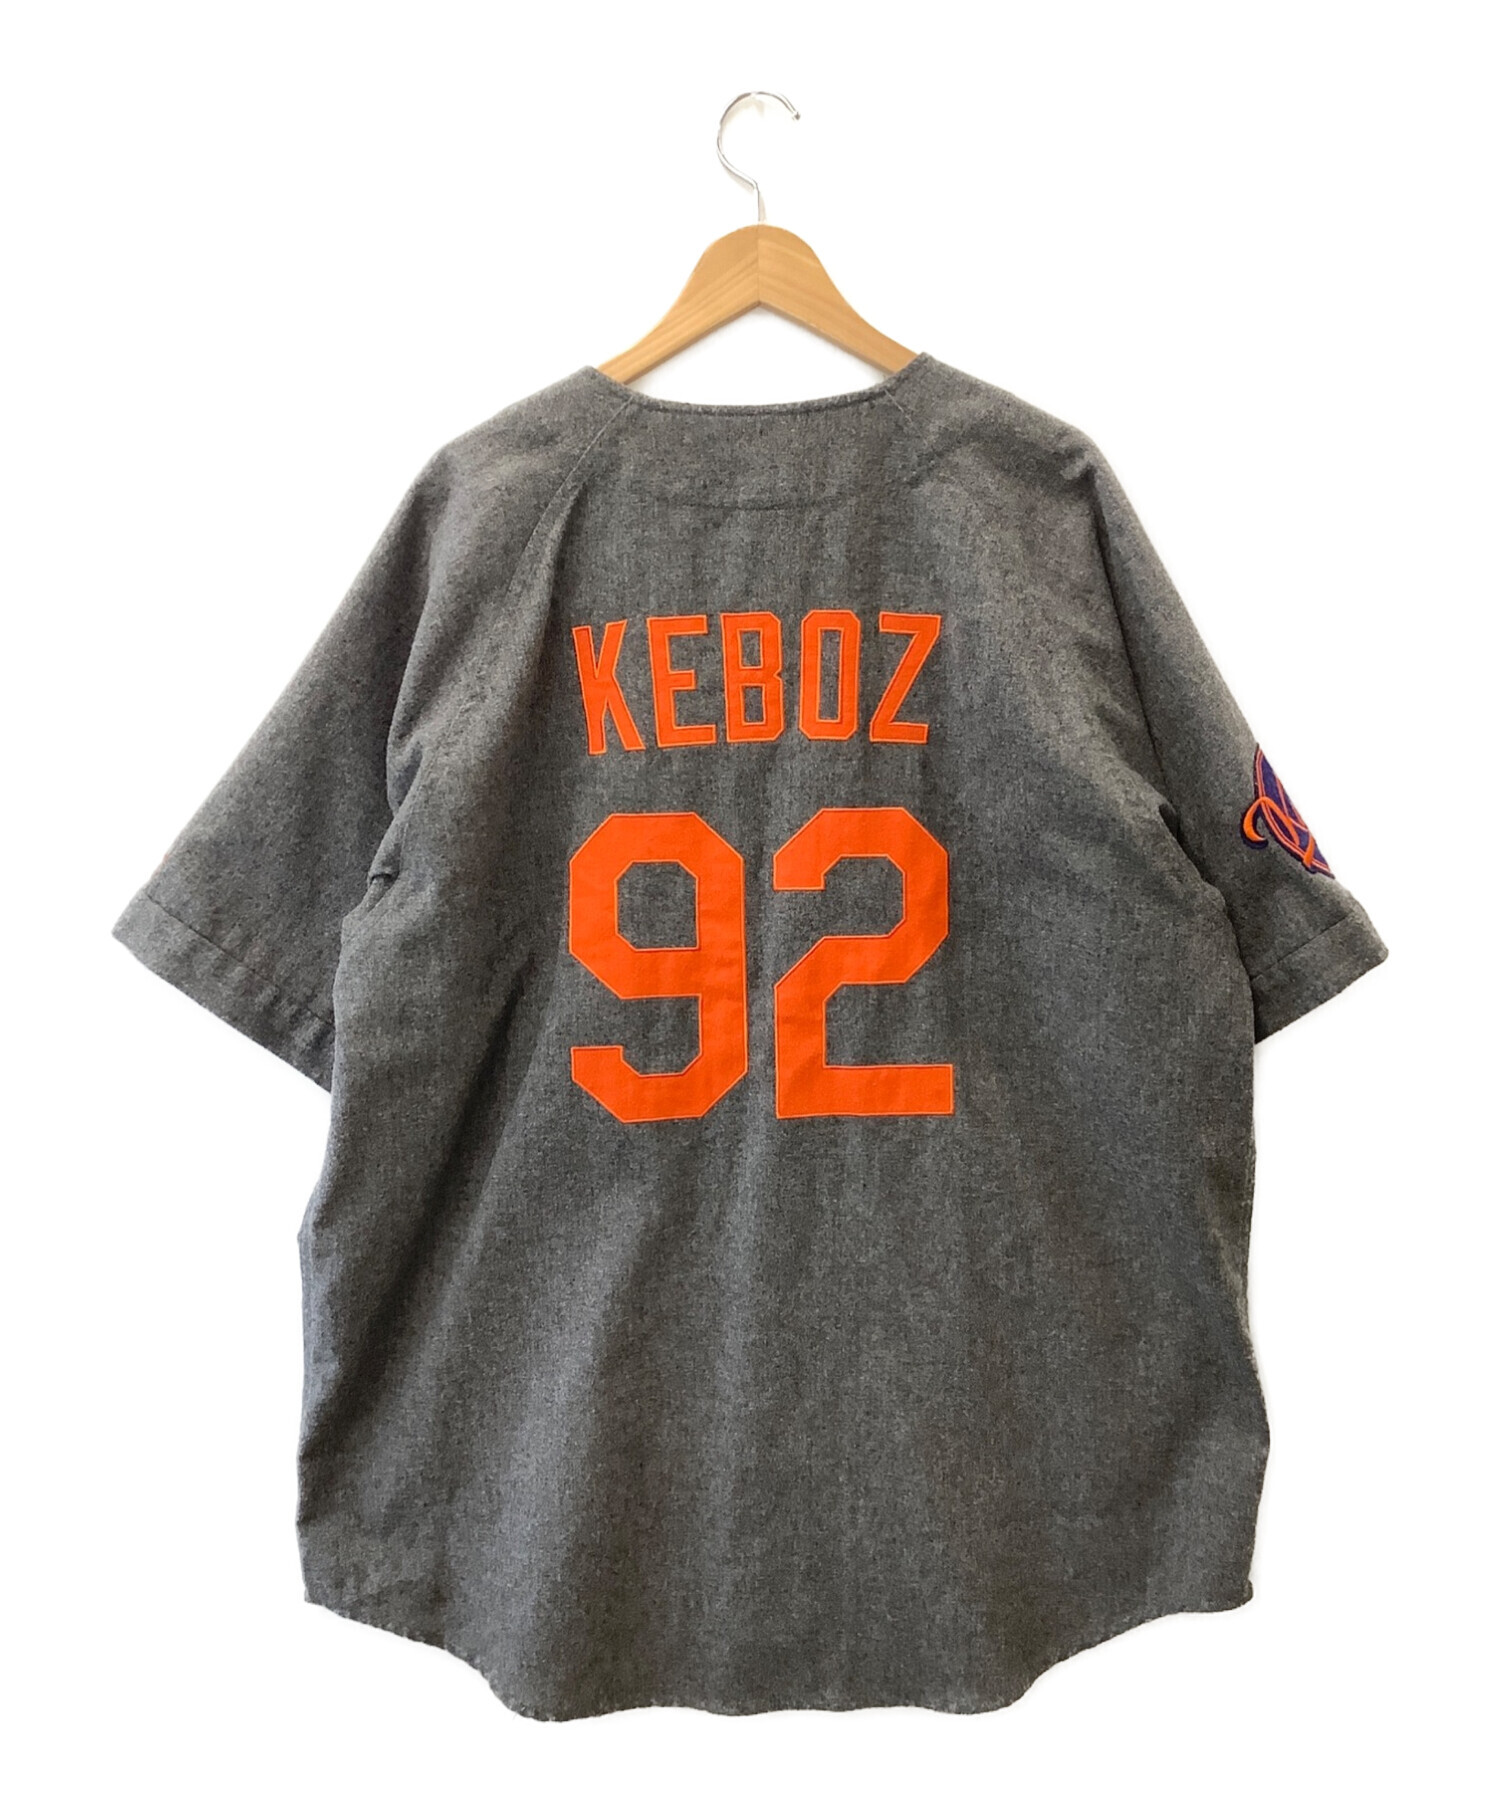 keboz × starter ベースボールシャツ